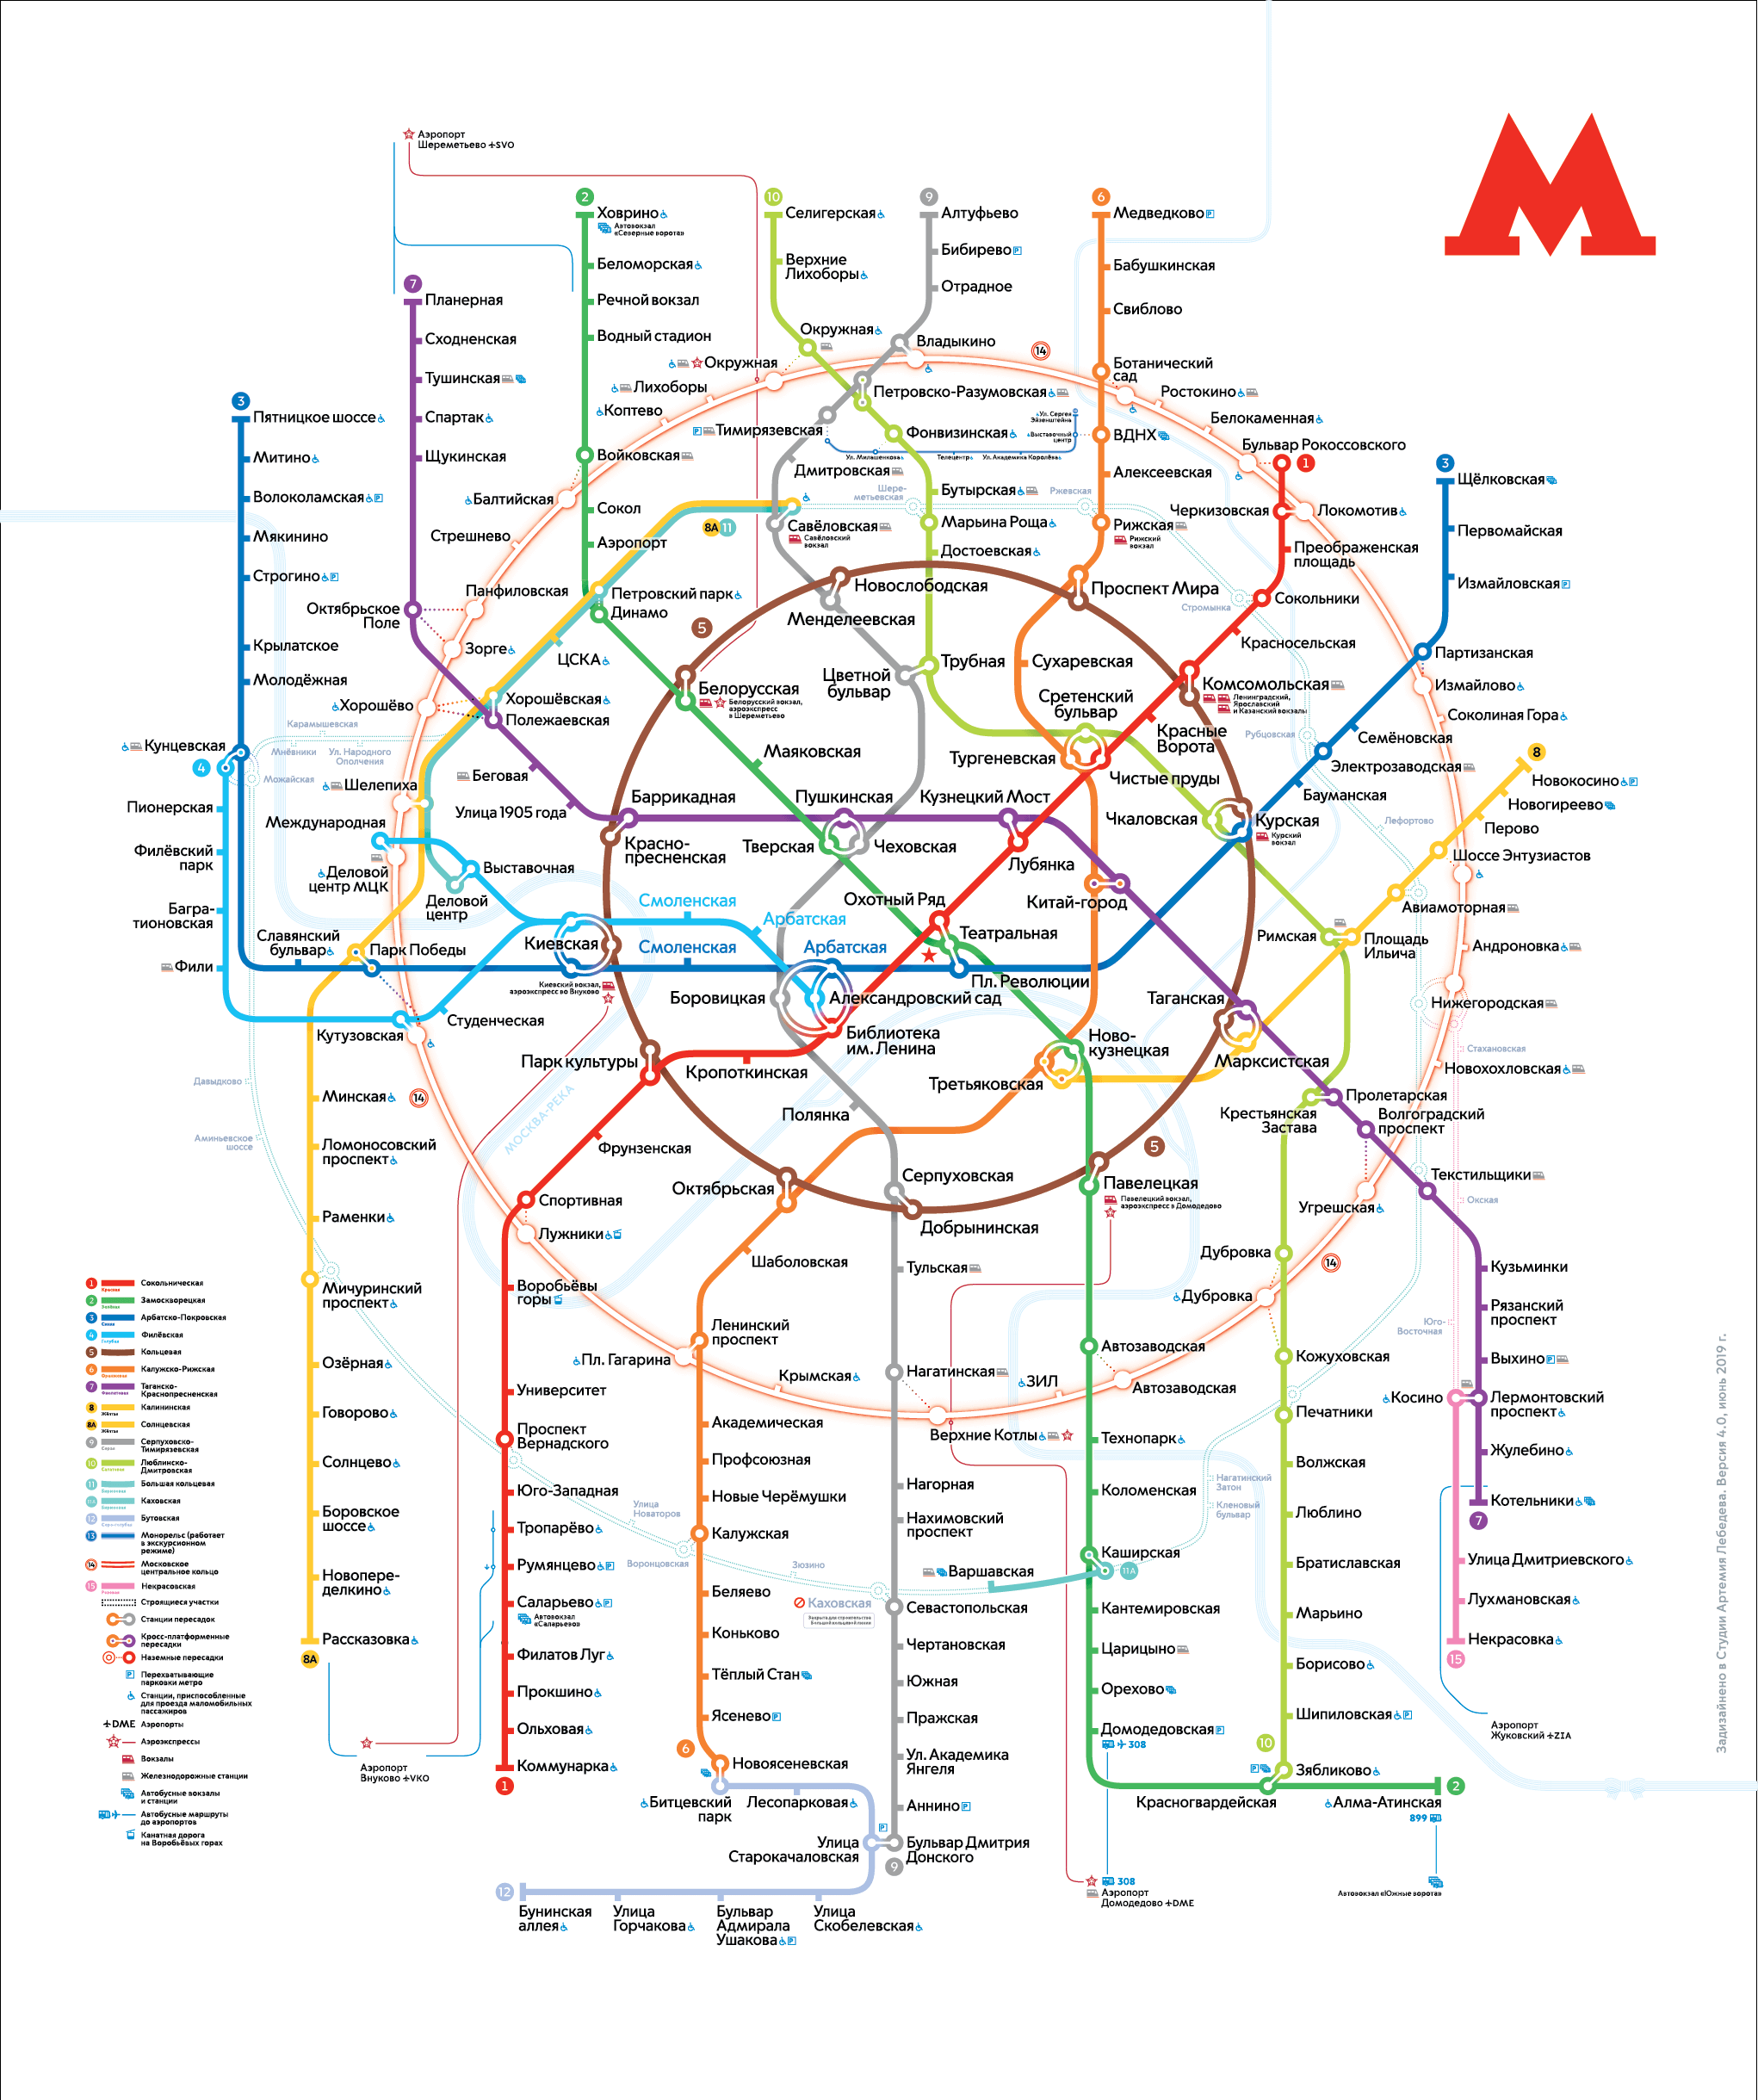 Метро москвы 2017 года схема